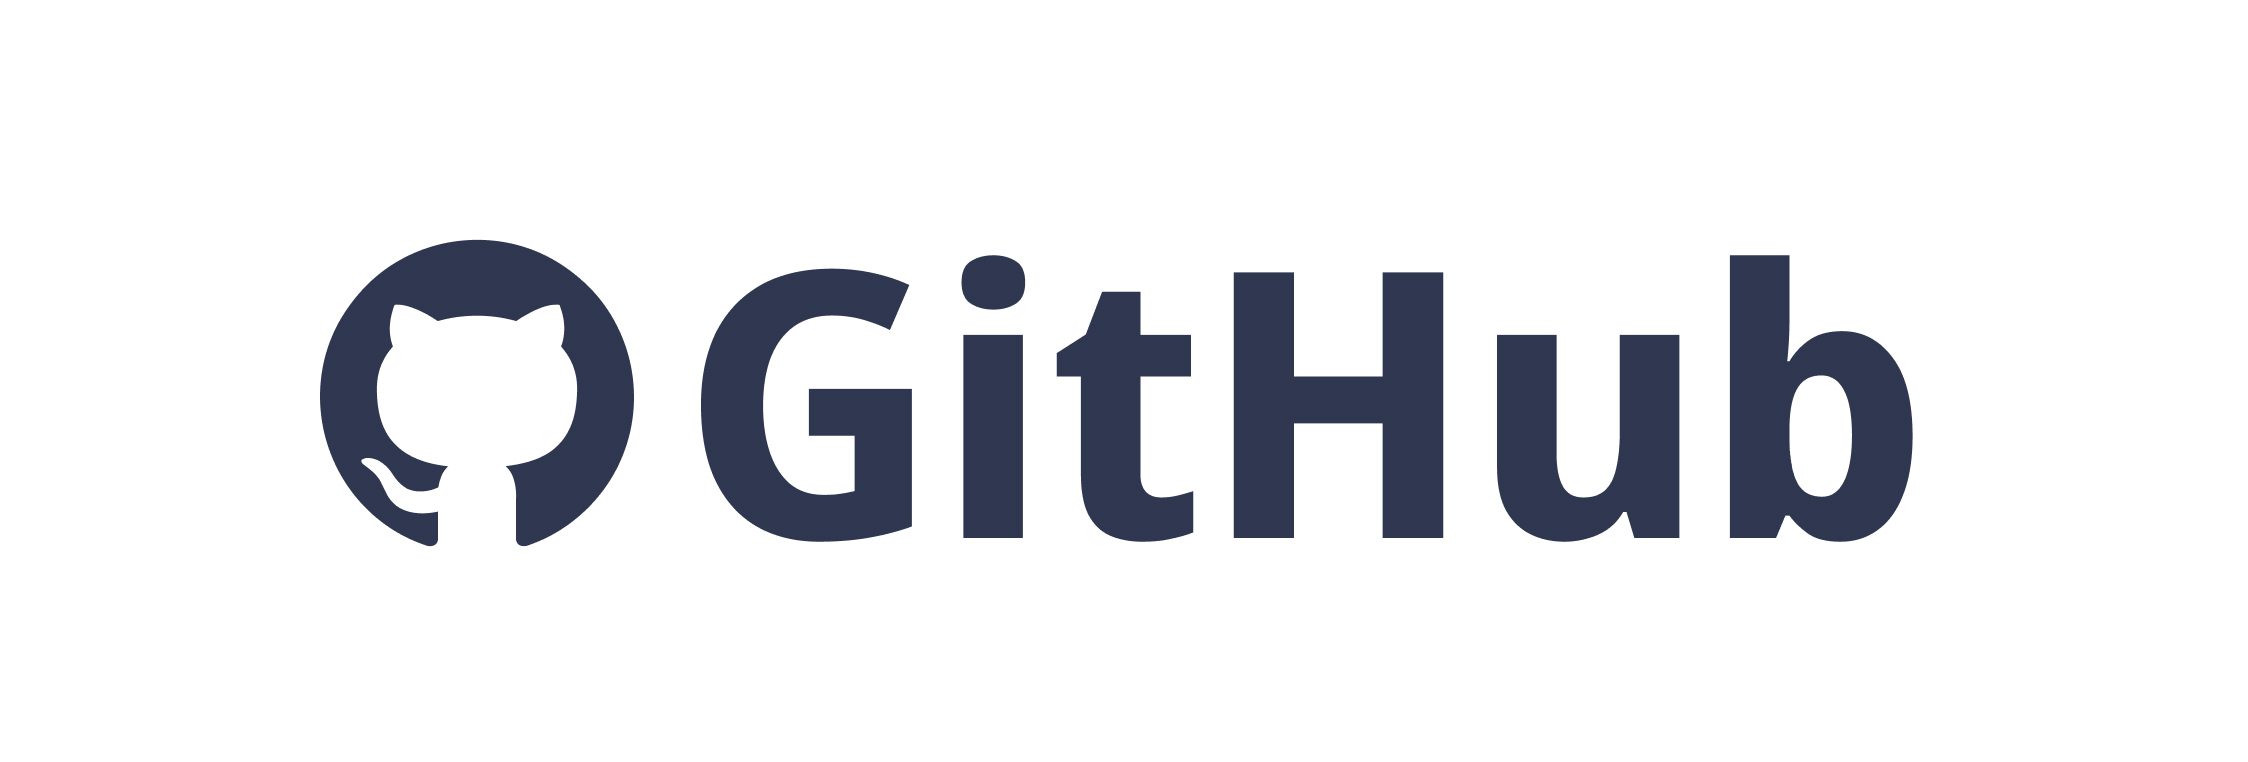 Github-logo